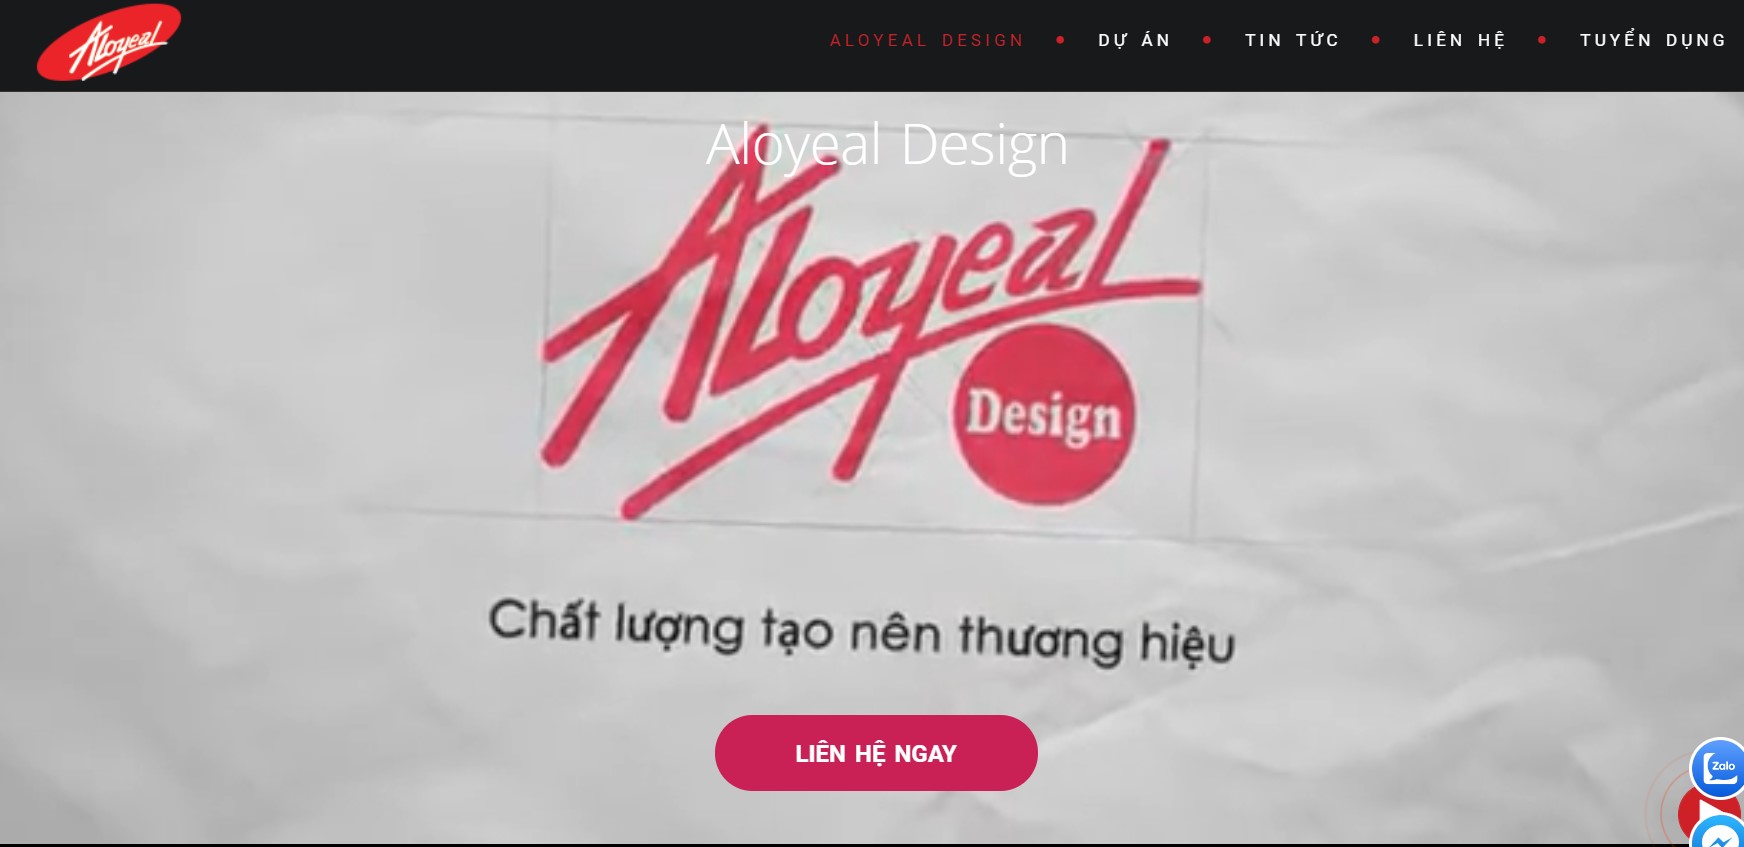 Công ty thiết kế nhà Aloyeal Design